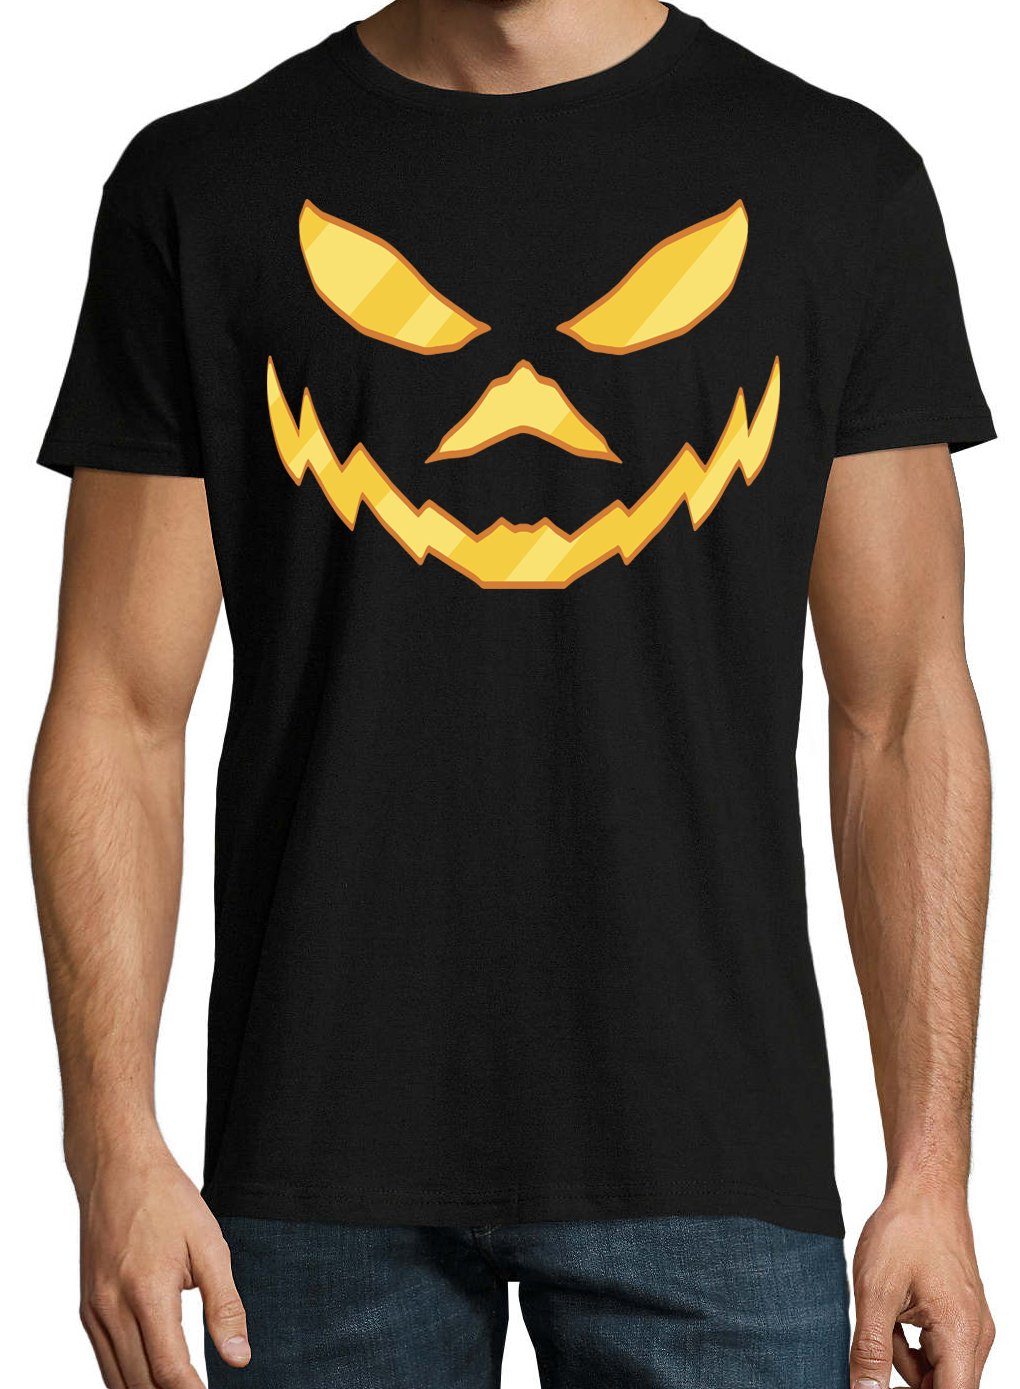 T-Shirt Joker Aufdruck Face Schwarz mit modischem Halloween Print Horror Designz Herren Fun-Look Print-Shirt Youth